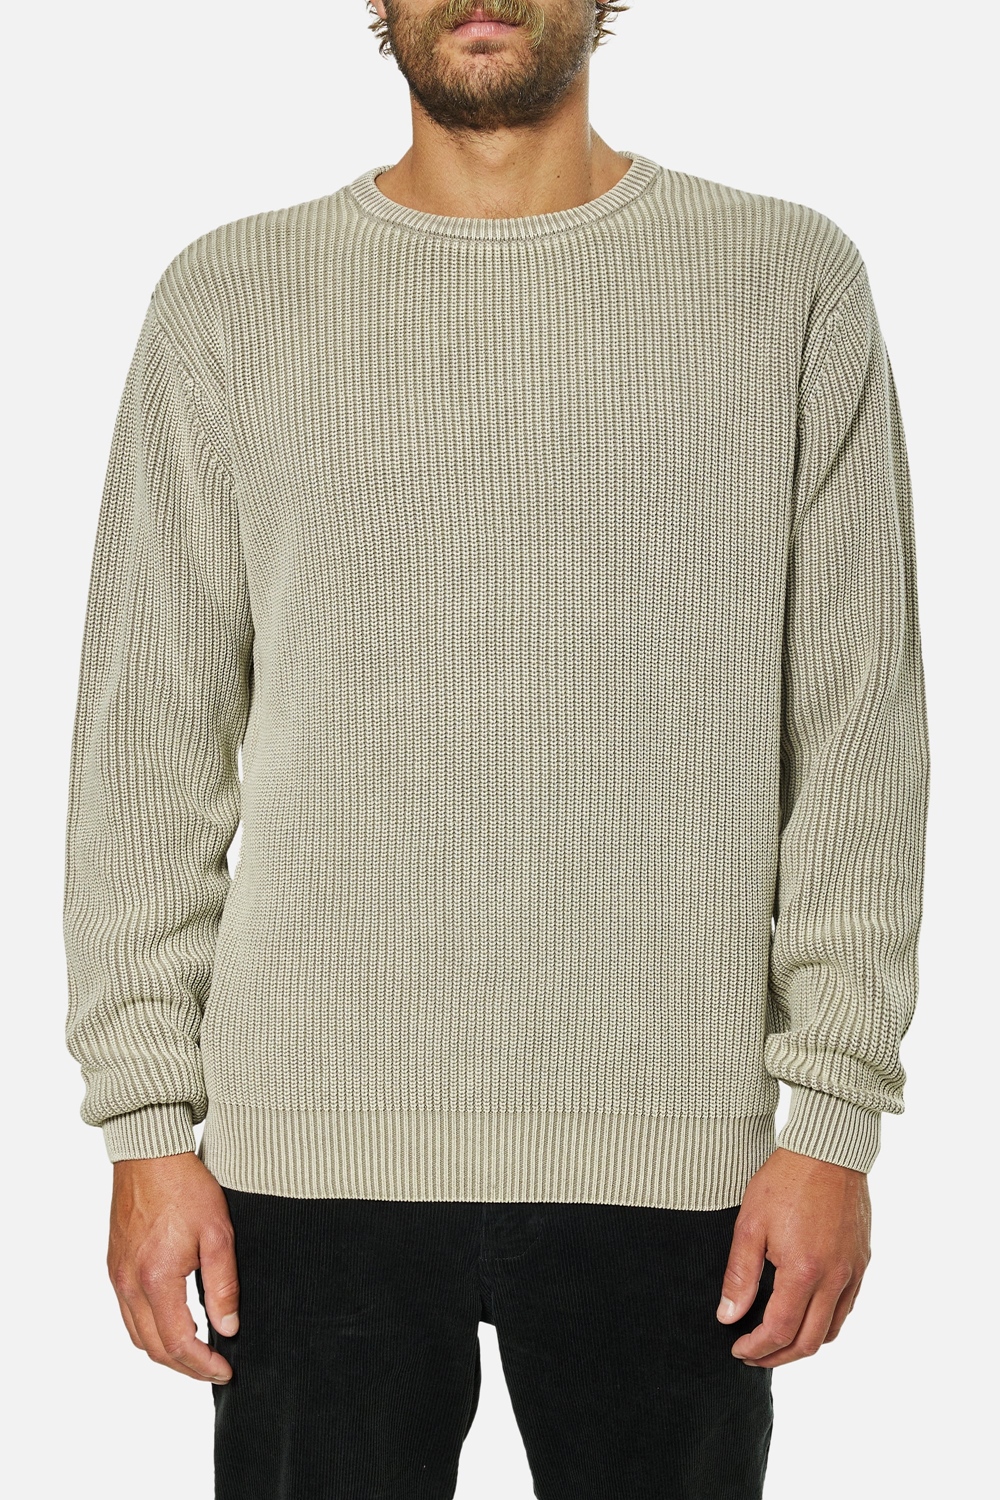 KATIN Swell Sweater